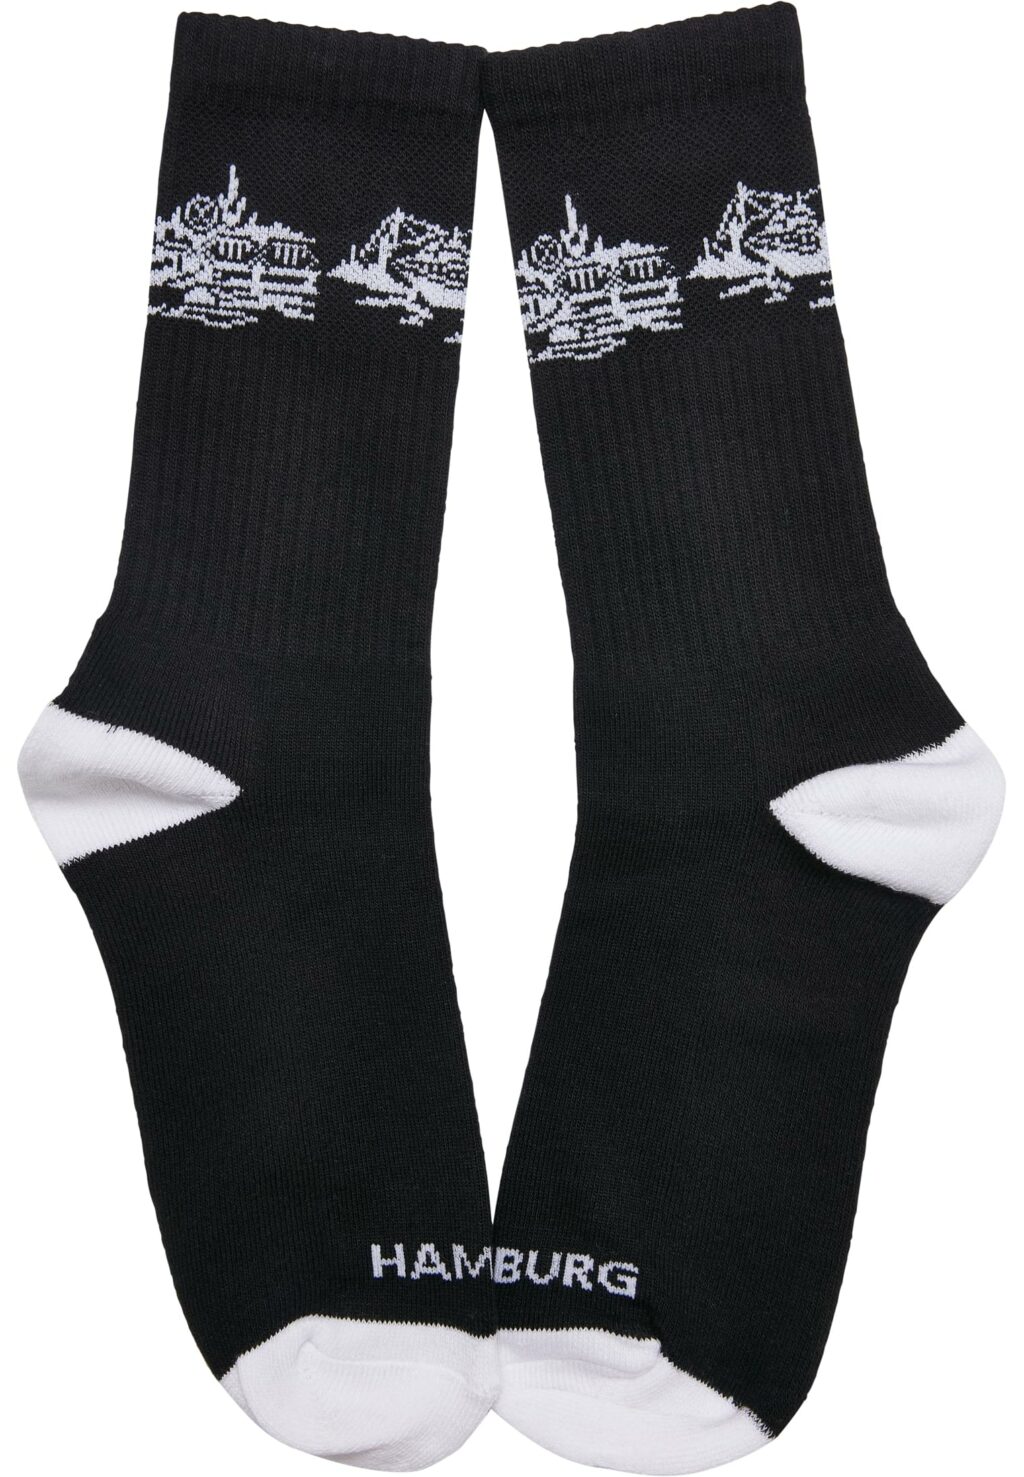 Major City 040 Socks 2-Pack black/white MT2315